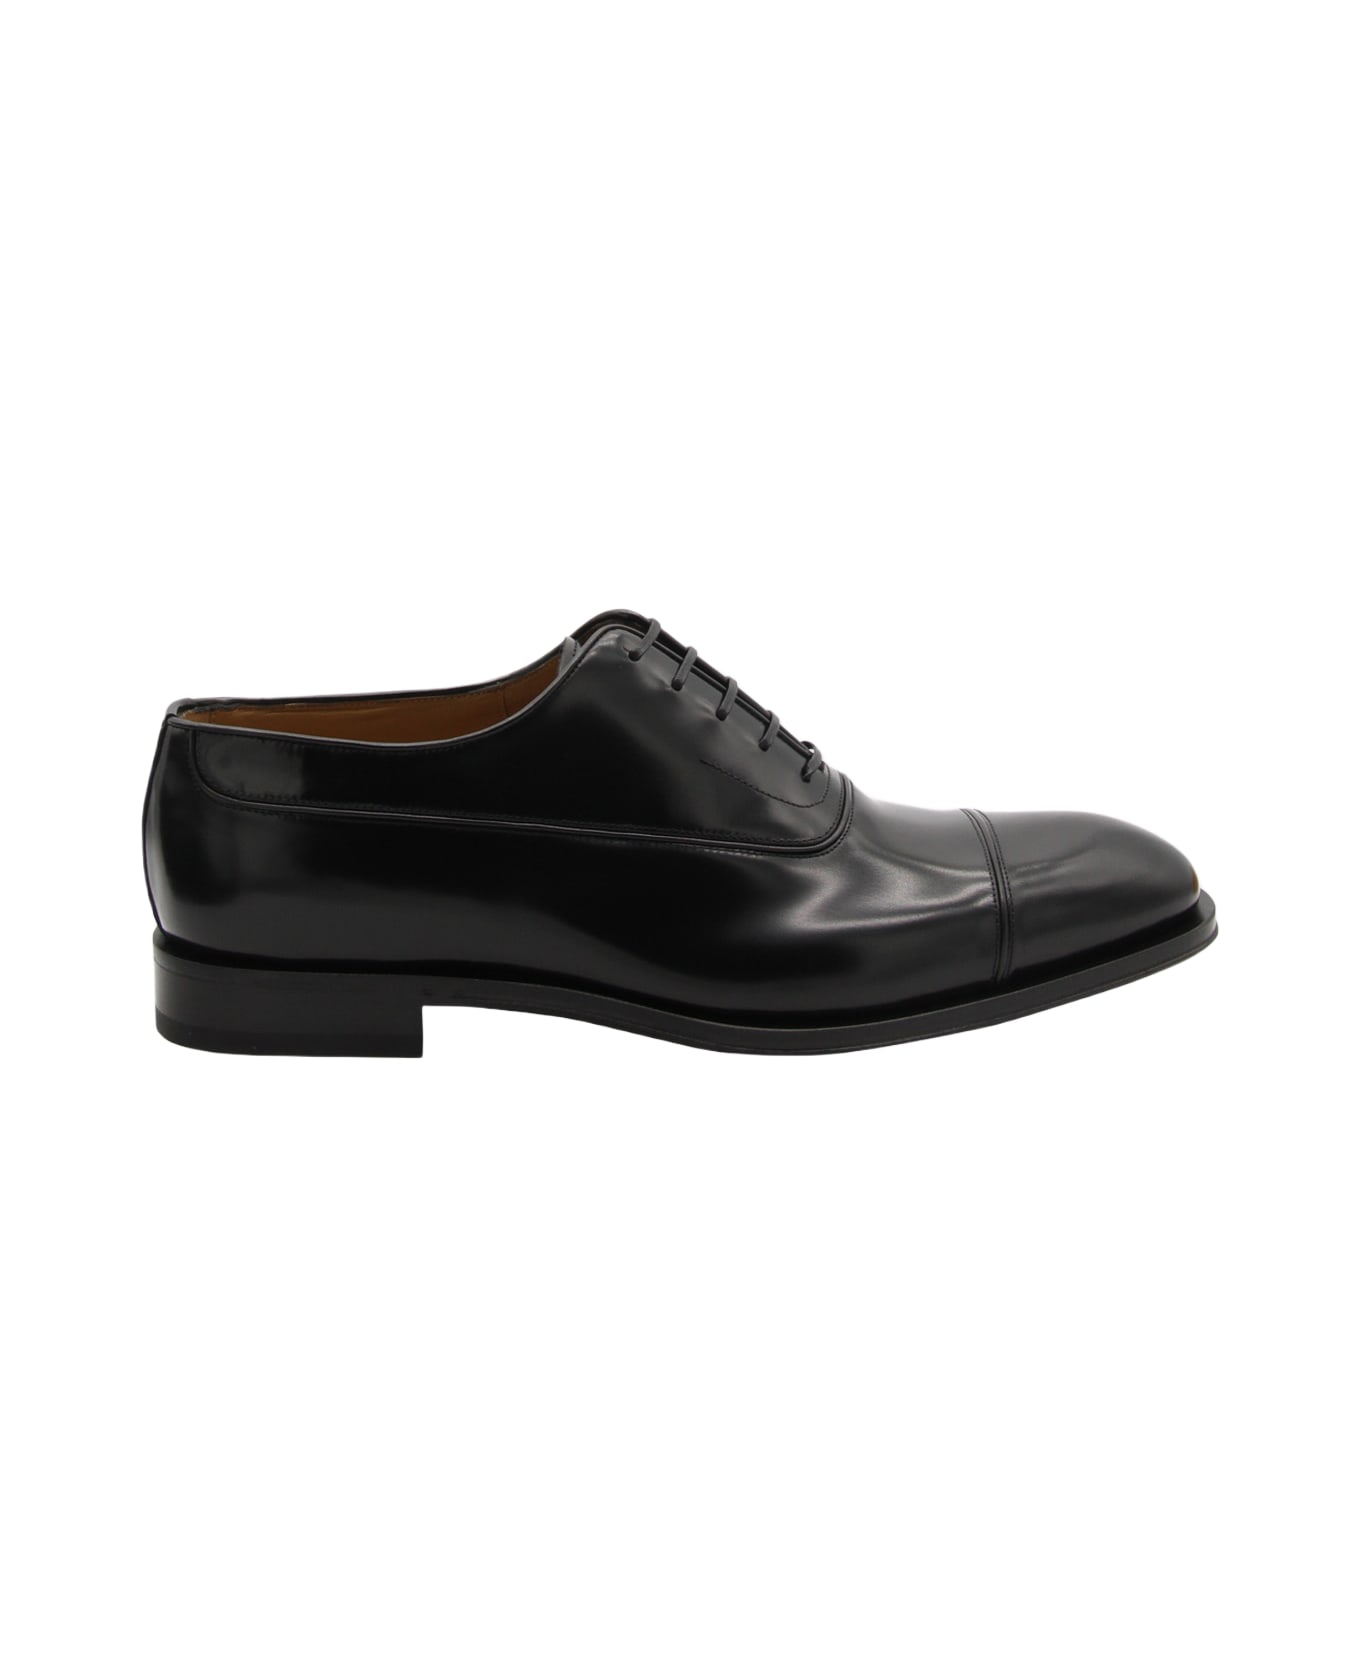 Ferragamo Black Leather Lace-up Shoes - Black